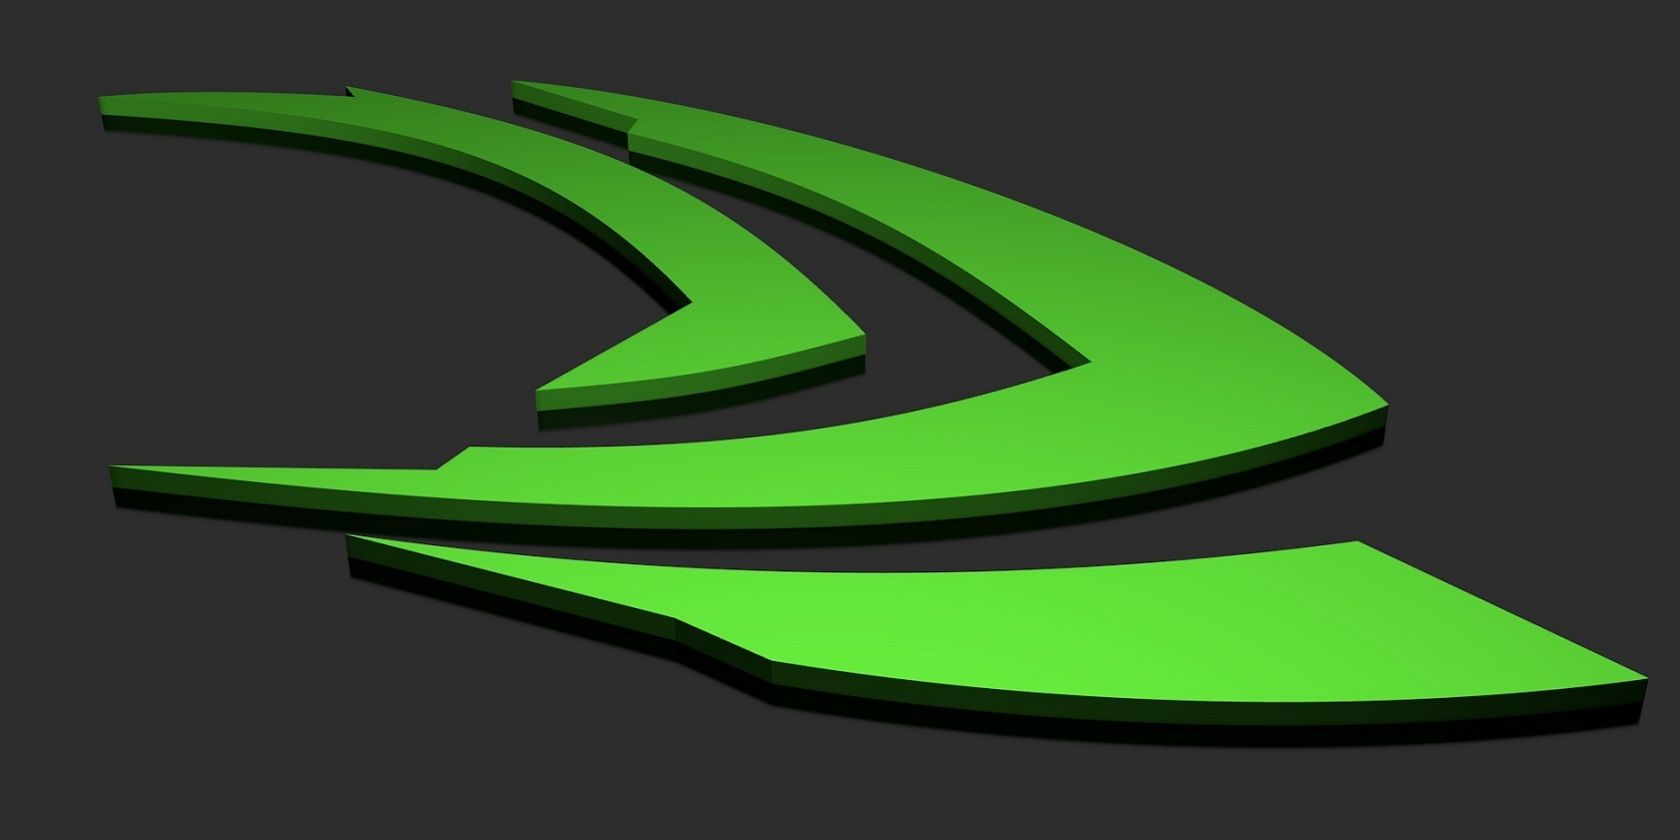 the nvidia logo